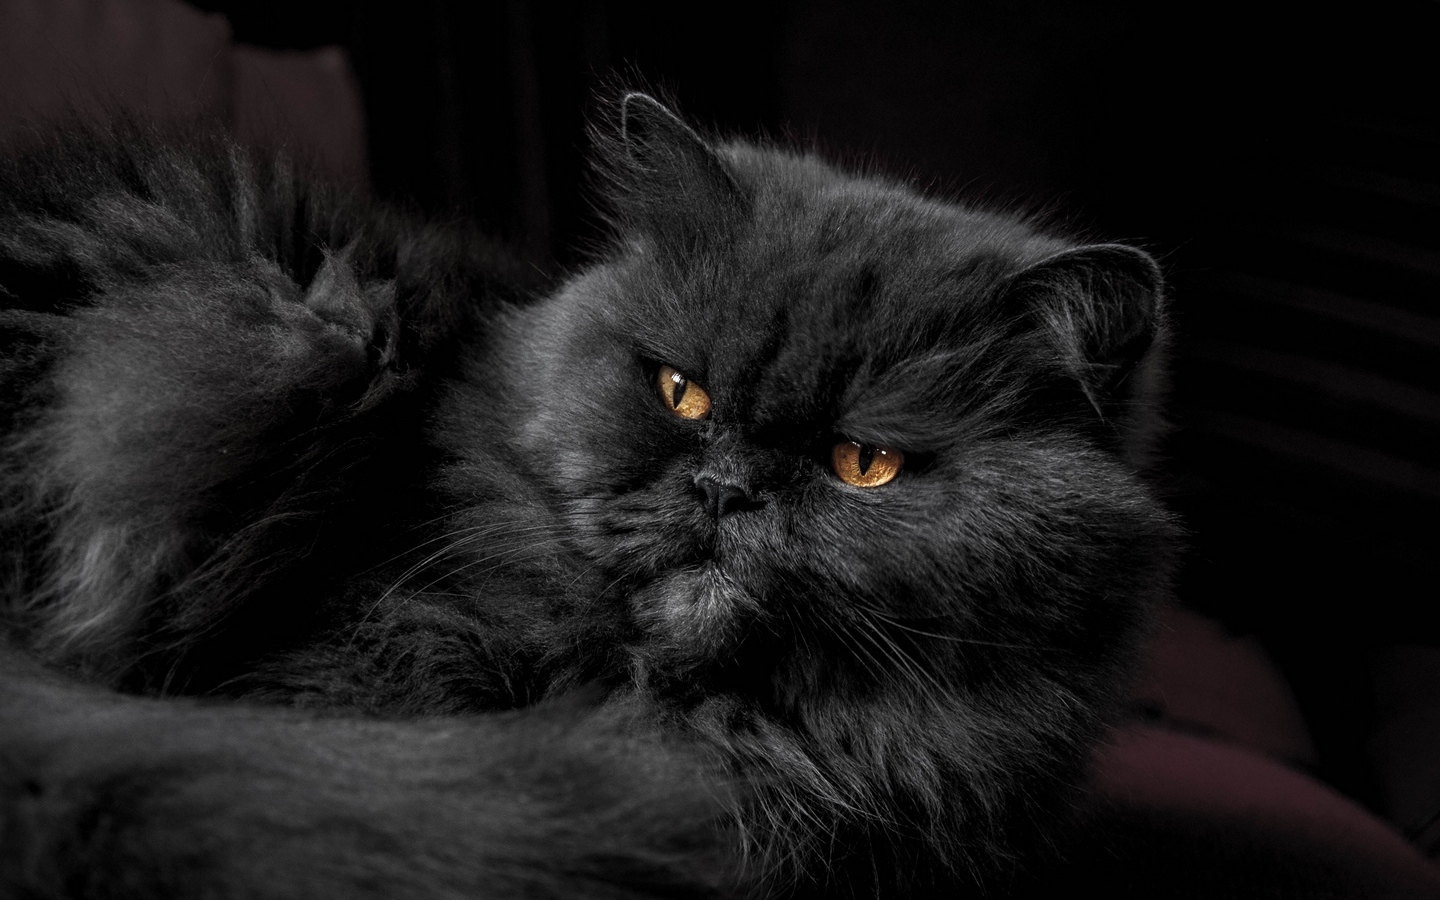 纯黑色平脸猫包子脸长毛猫大屏高清1440x900桌面壁纸